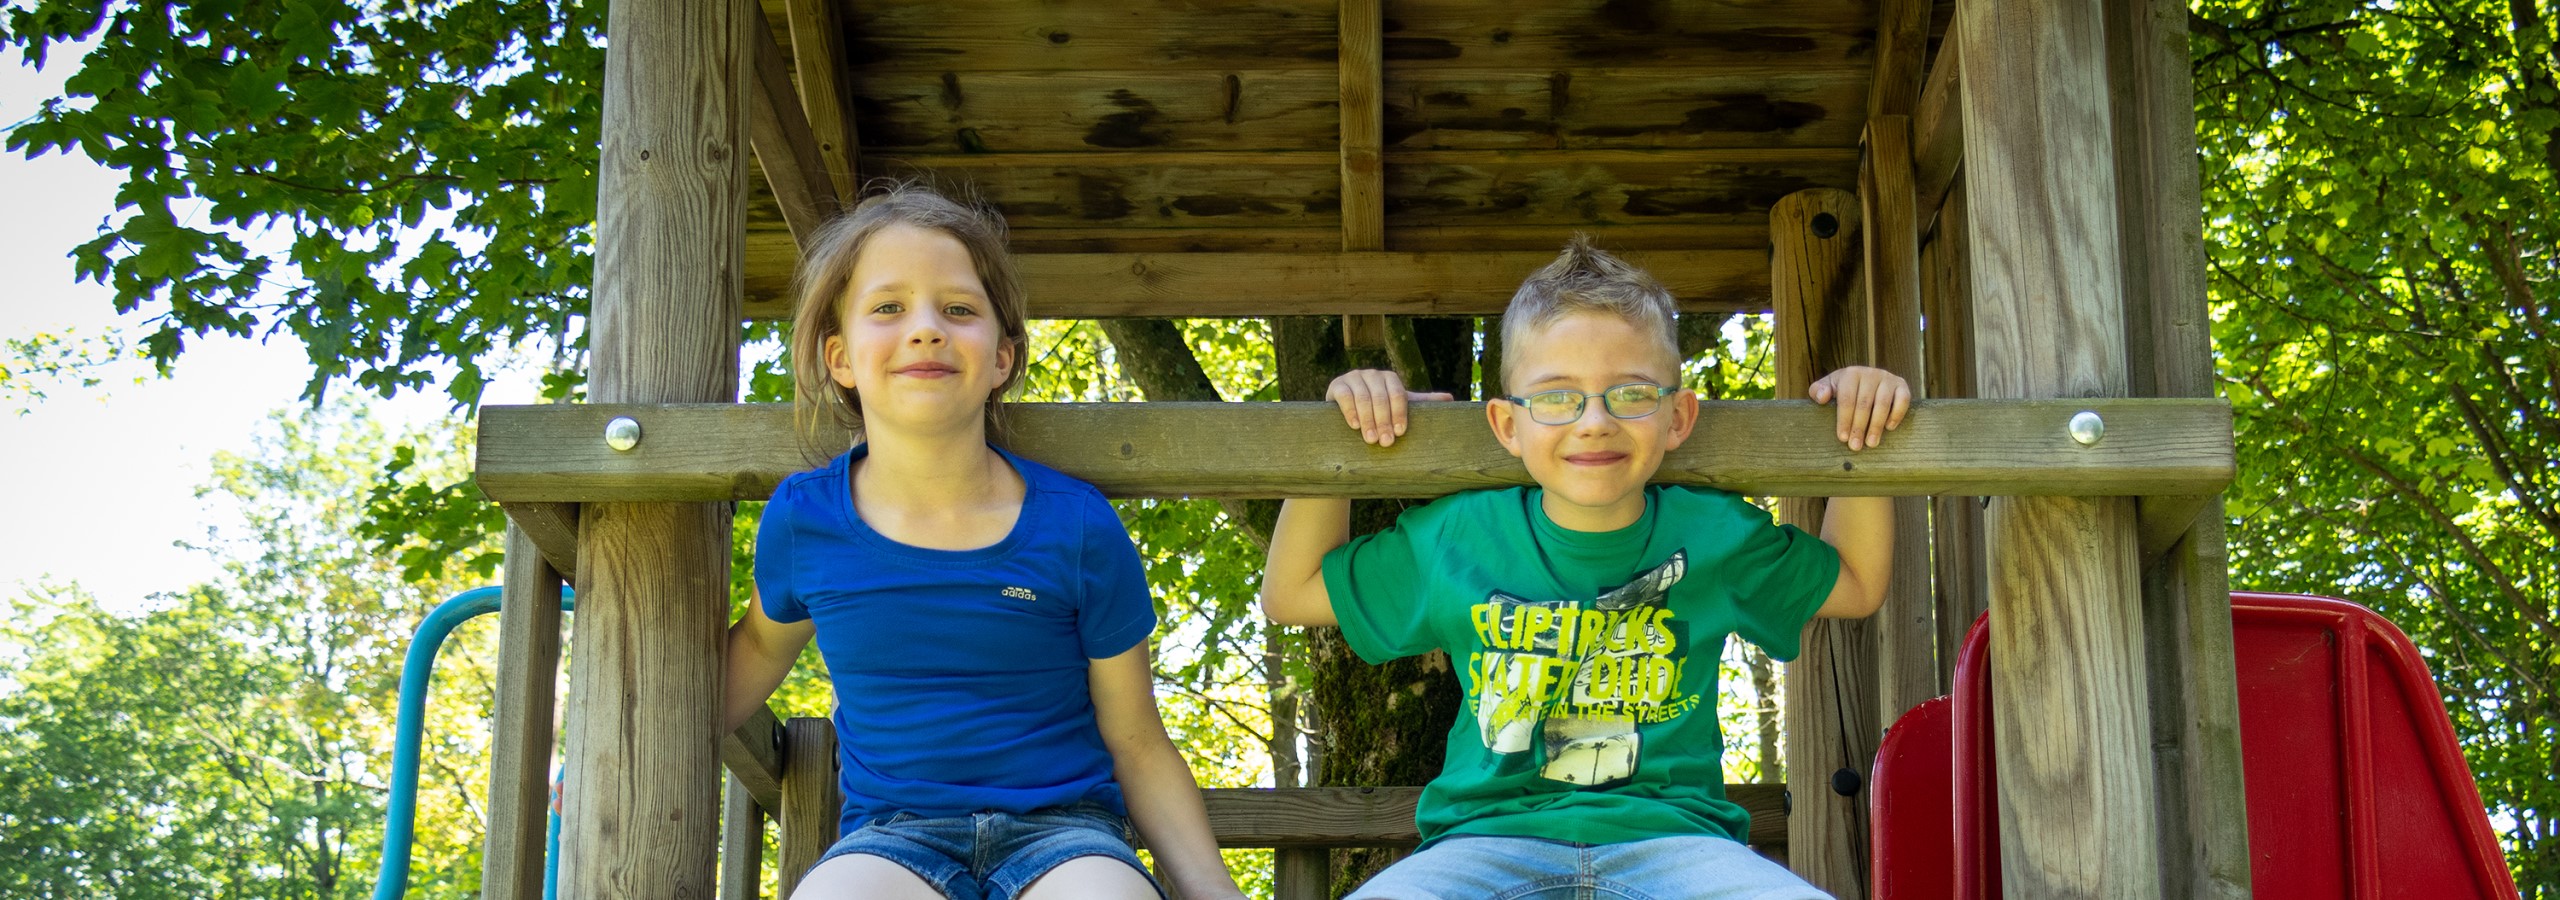 Familien und Kinder - Panoramaschnitt Junge und Mädchen auf Rutschenturm lächeln in die Kamera